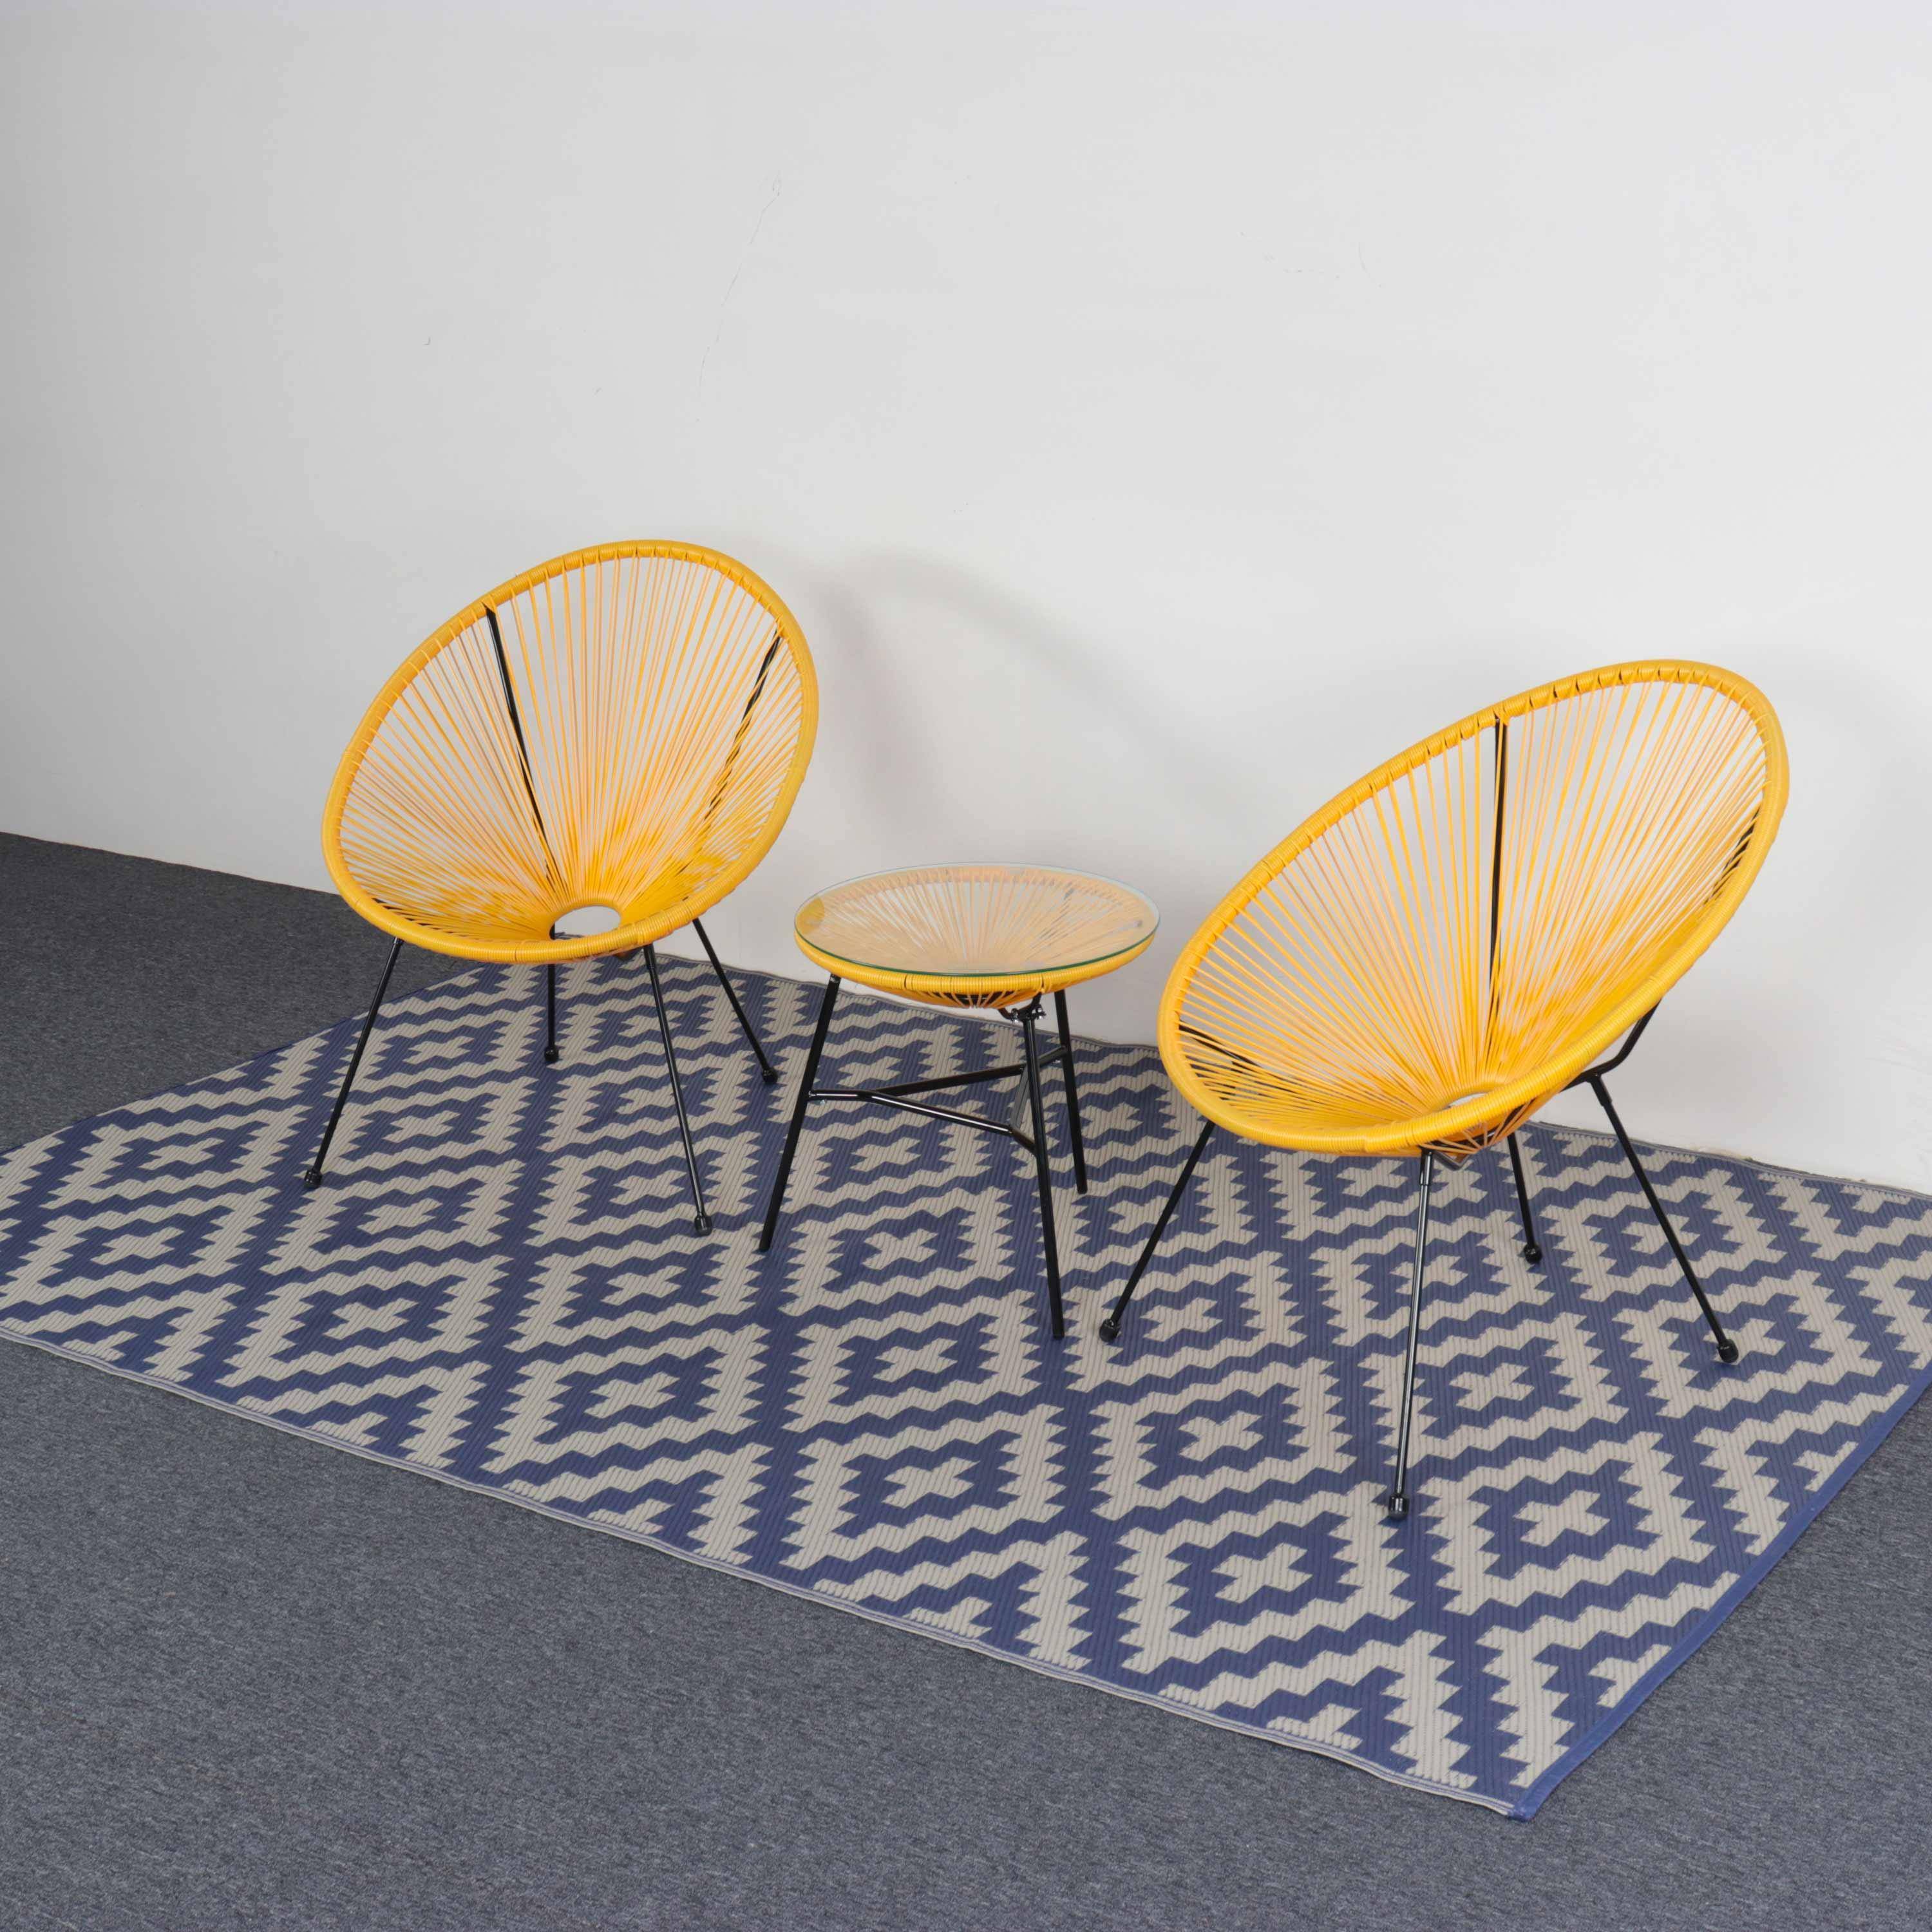 Outdoor Rug - 180x270cm - Jacquard, reversible, rectangular, indoor/outdoor use - Stockholm - Blue-beige,sweeek,Photo4